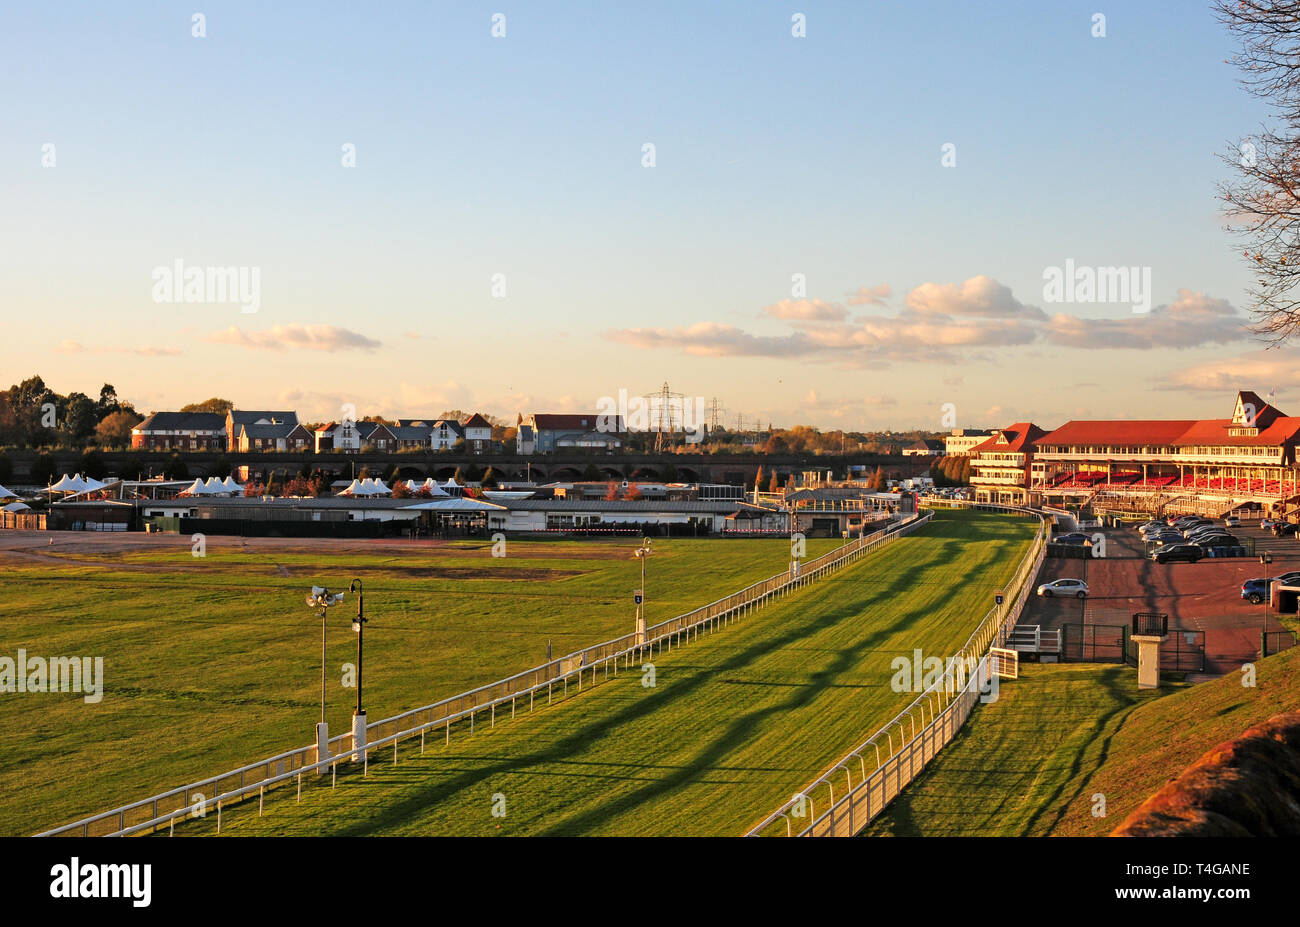 Chester Race Course dalle mura della città. Foto Stock